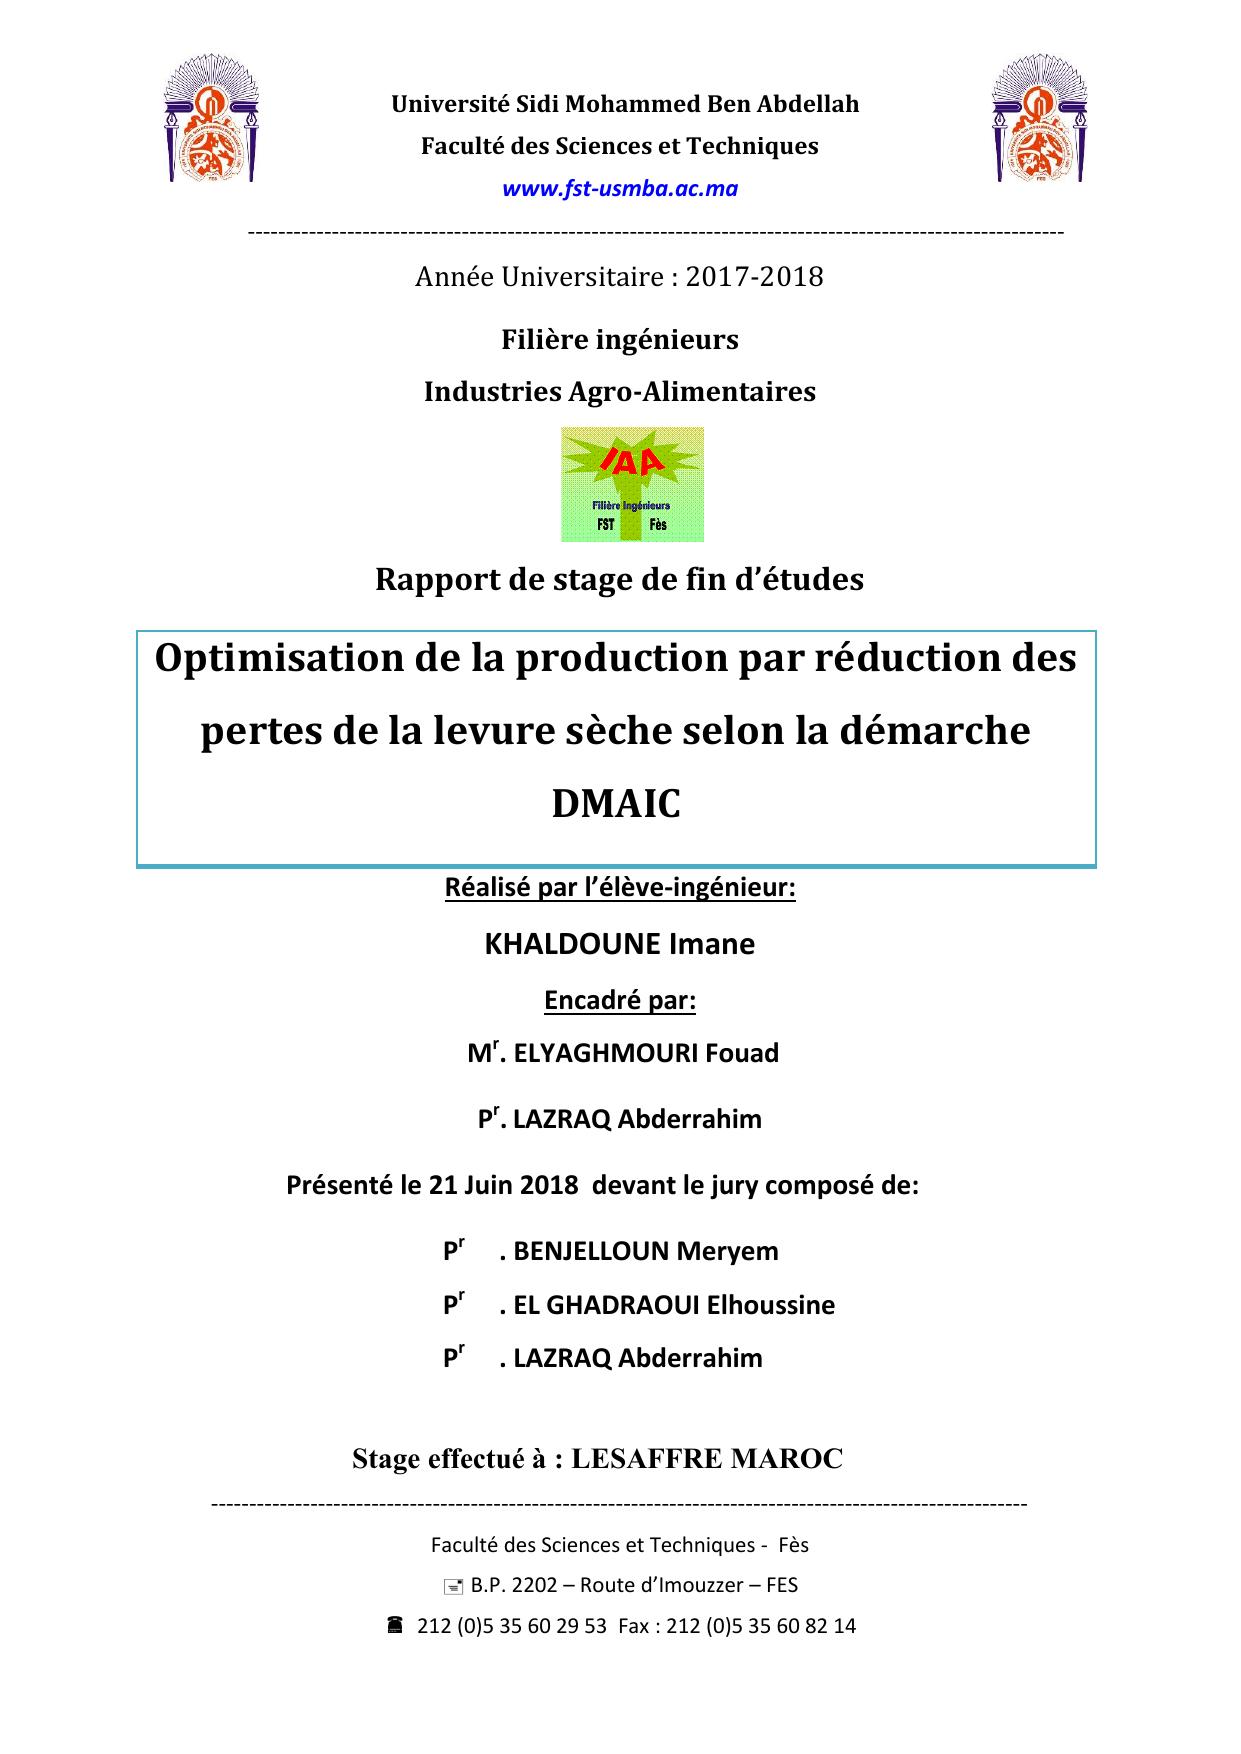 Optimisation de la production par réduction des pertes de la levure sèche selon la démarche DMAIC